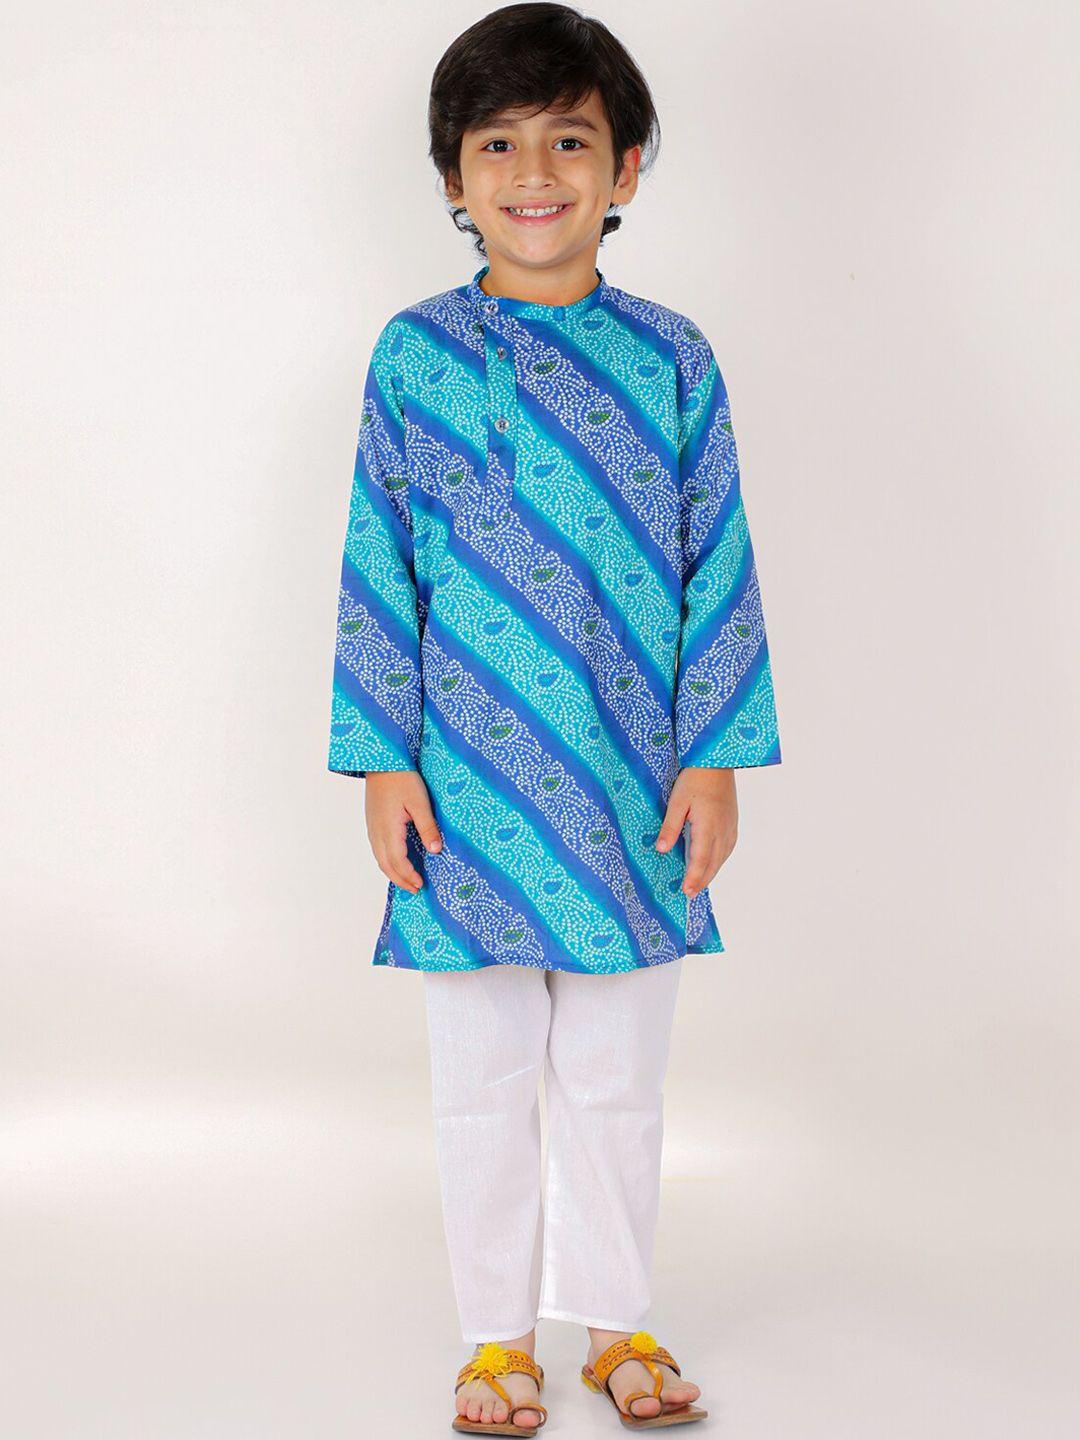 the-mom-store-boys-blue-bandhani-printed-pure-cotton-kurta-with-pyjamas